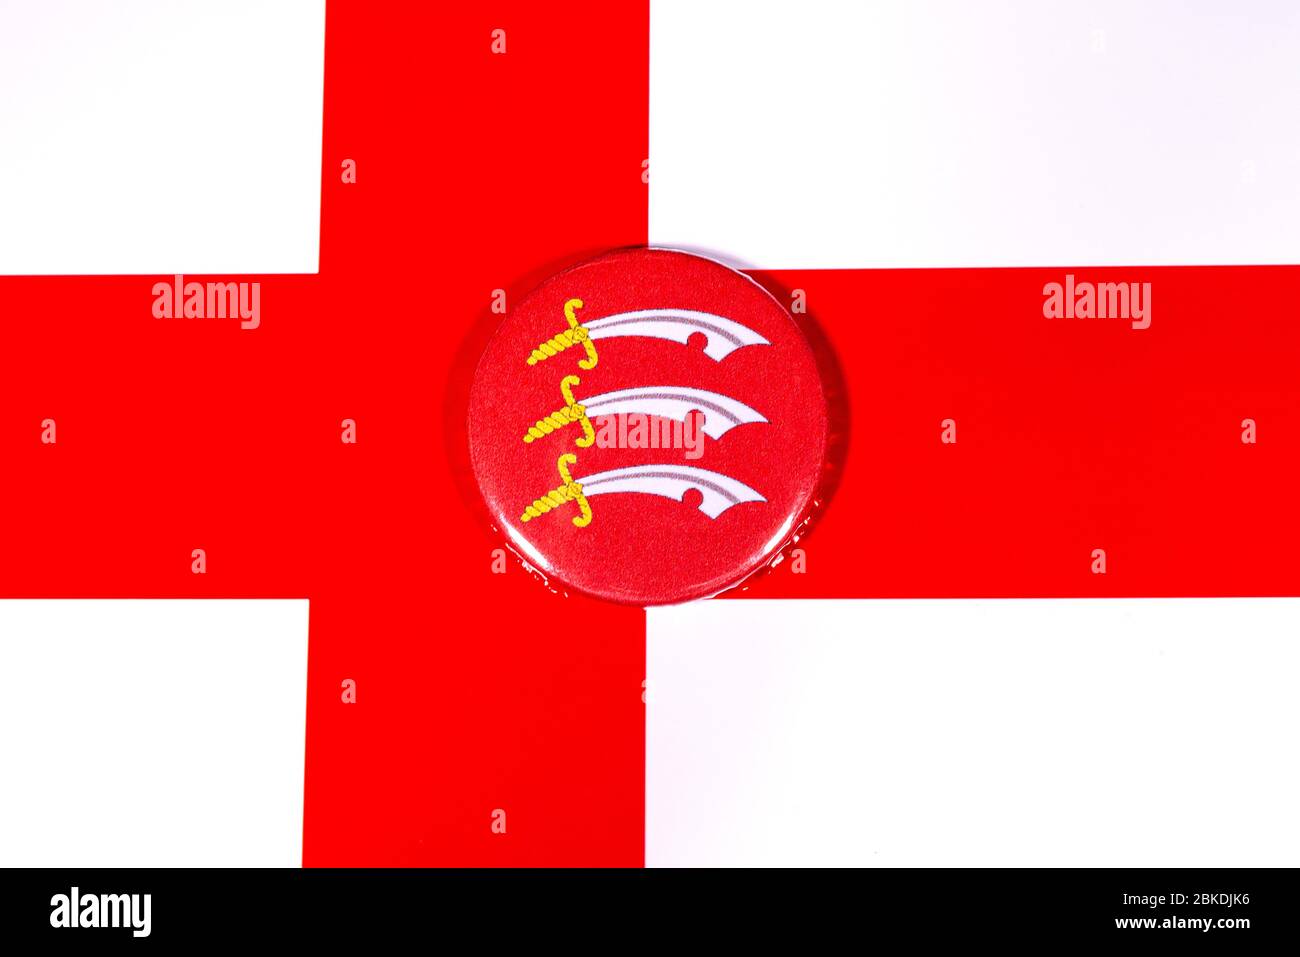 Ein Abzeichen, das die Flagge der englischen Grafschaft Essex darstellt, auf dem Bild der englischen Flagge. Stockfoto